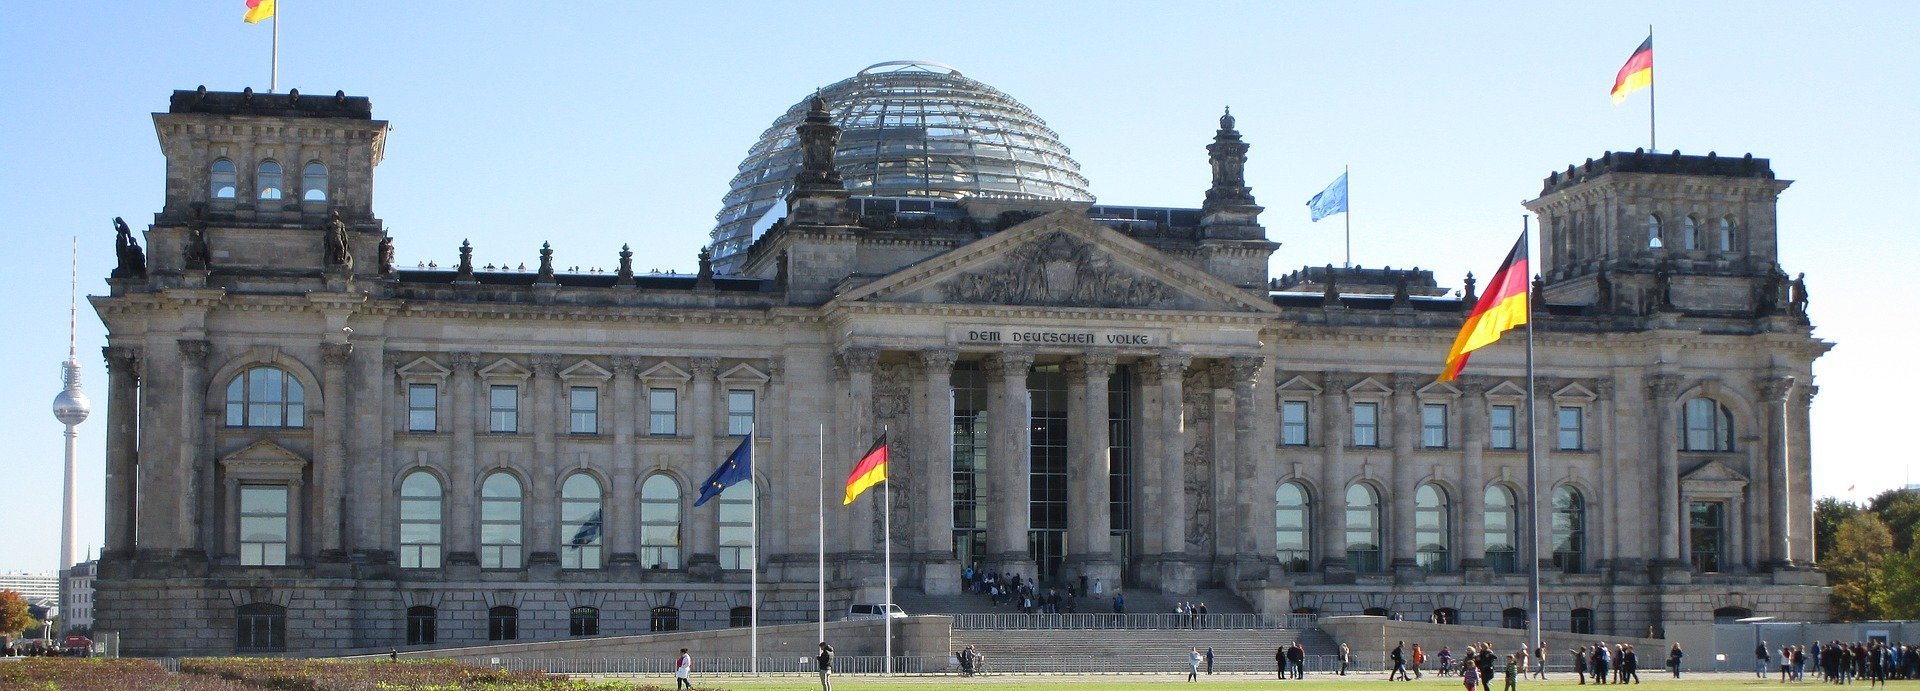 Grünfläche vor dem Bundestag, Bundestag im Hintergrund vor hellblauem Himmel